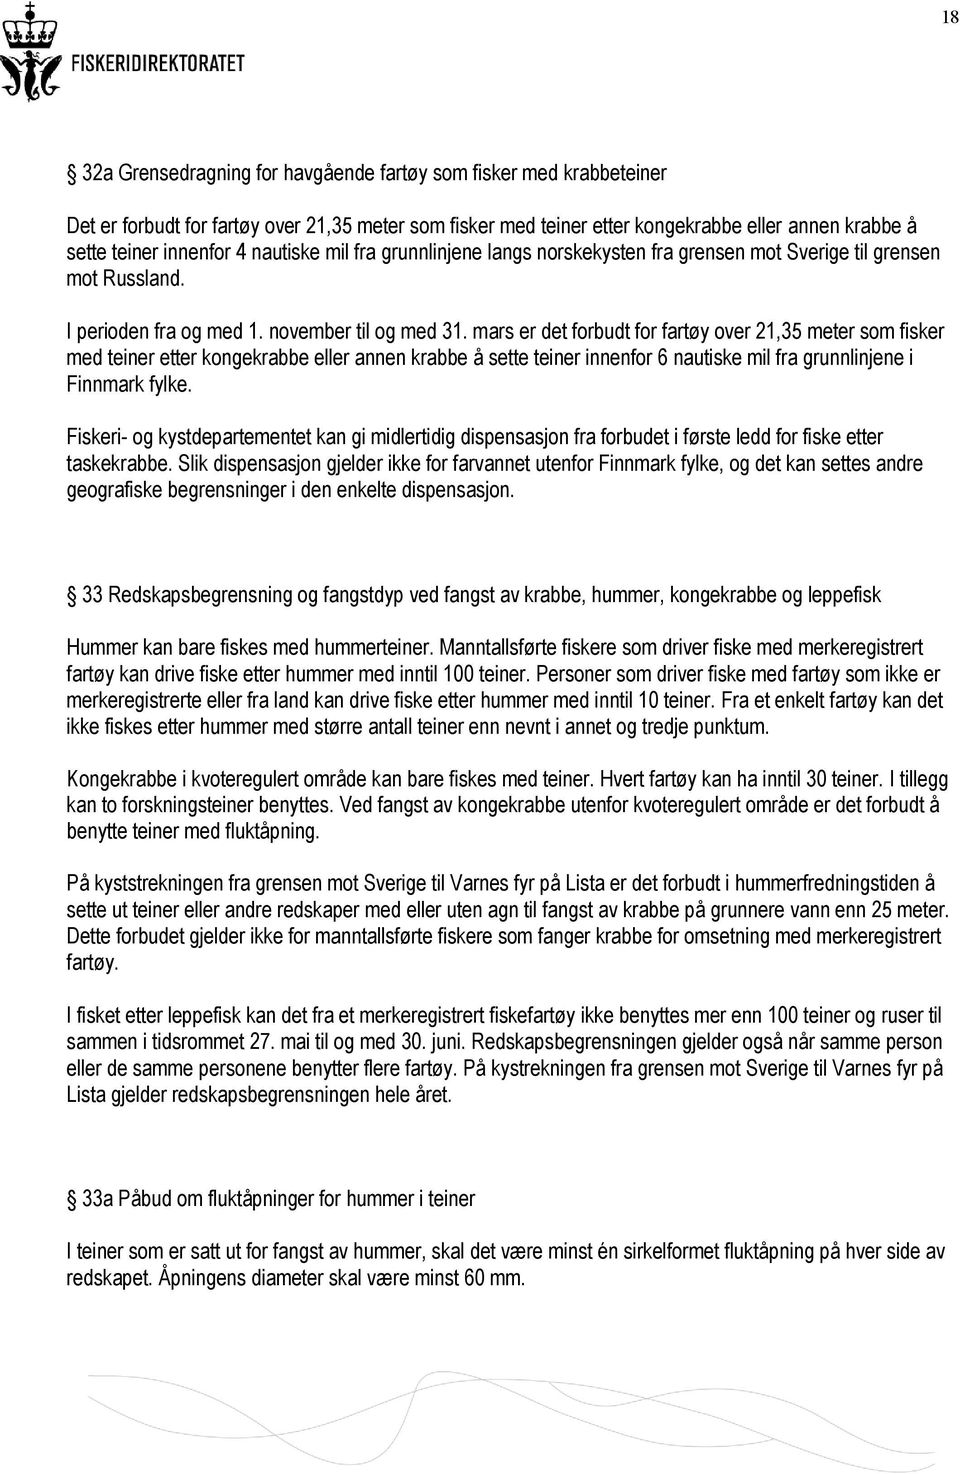 mars er det forbudt for fartøy over 21,35 meter som fisker med teiner etter kongekrabbe eller annen krabbe å sette teiner innenfor 6 nautiske mil fra grunnlinjene i Finnmark fylke.